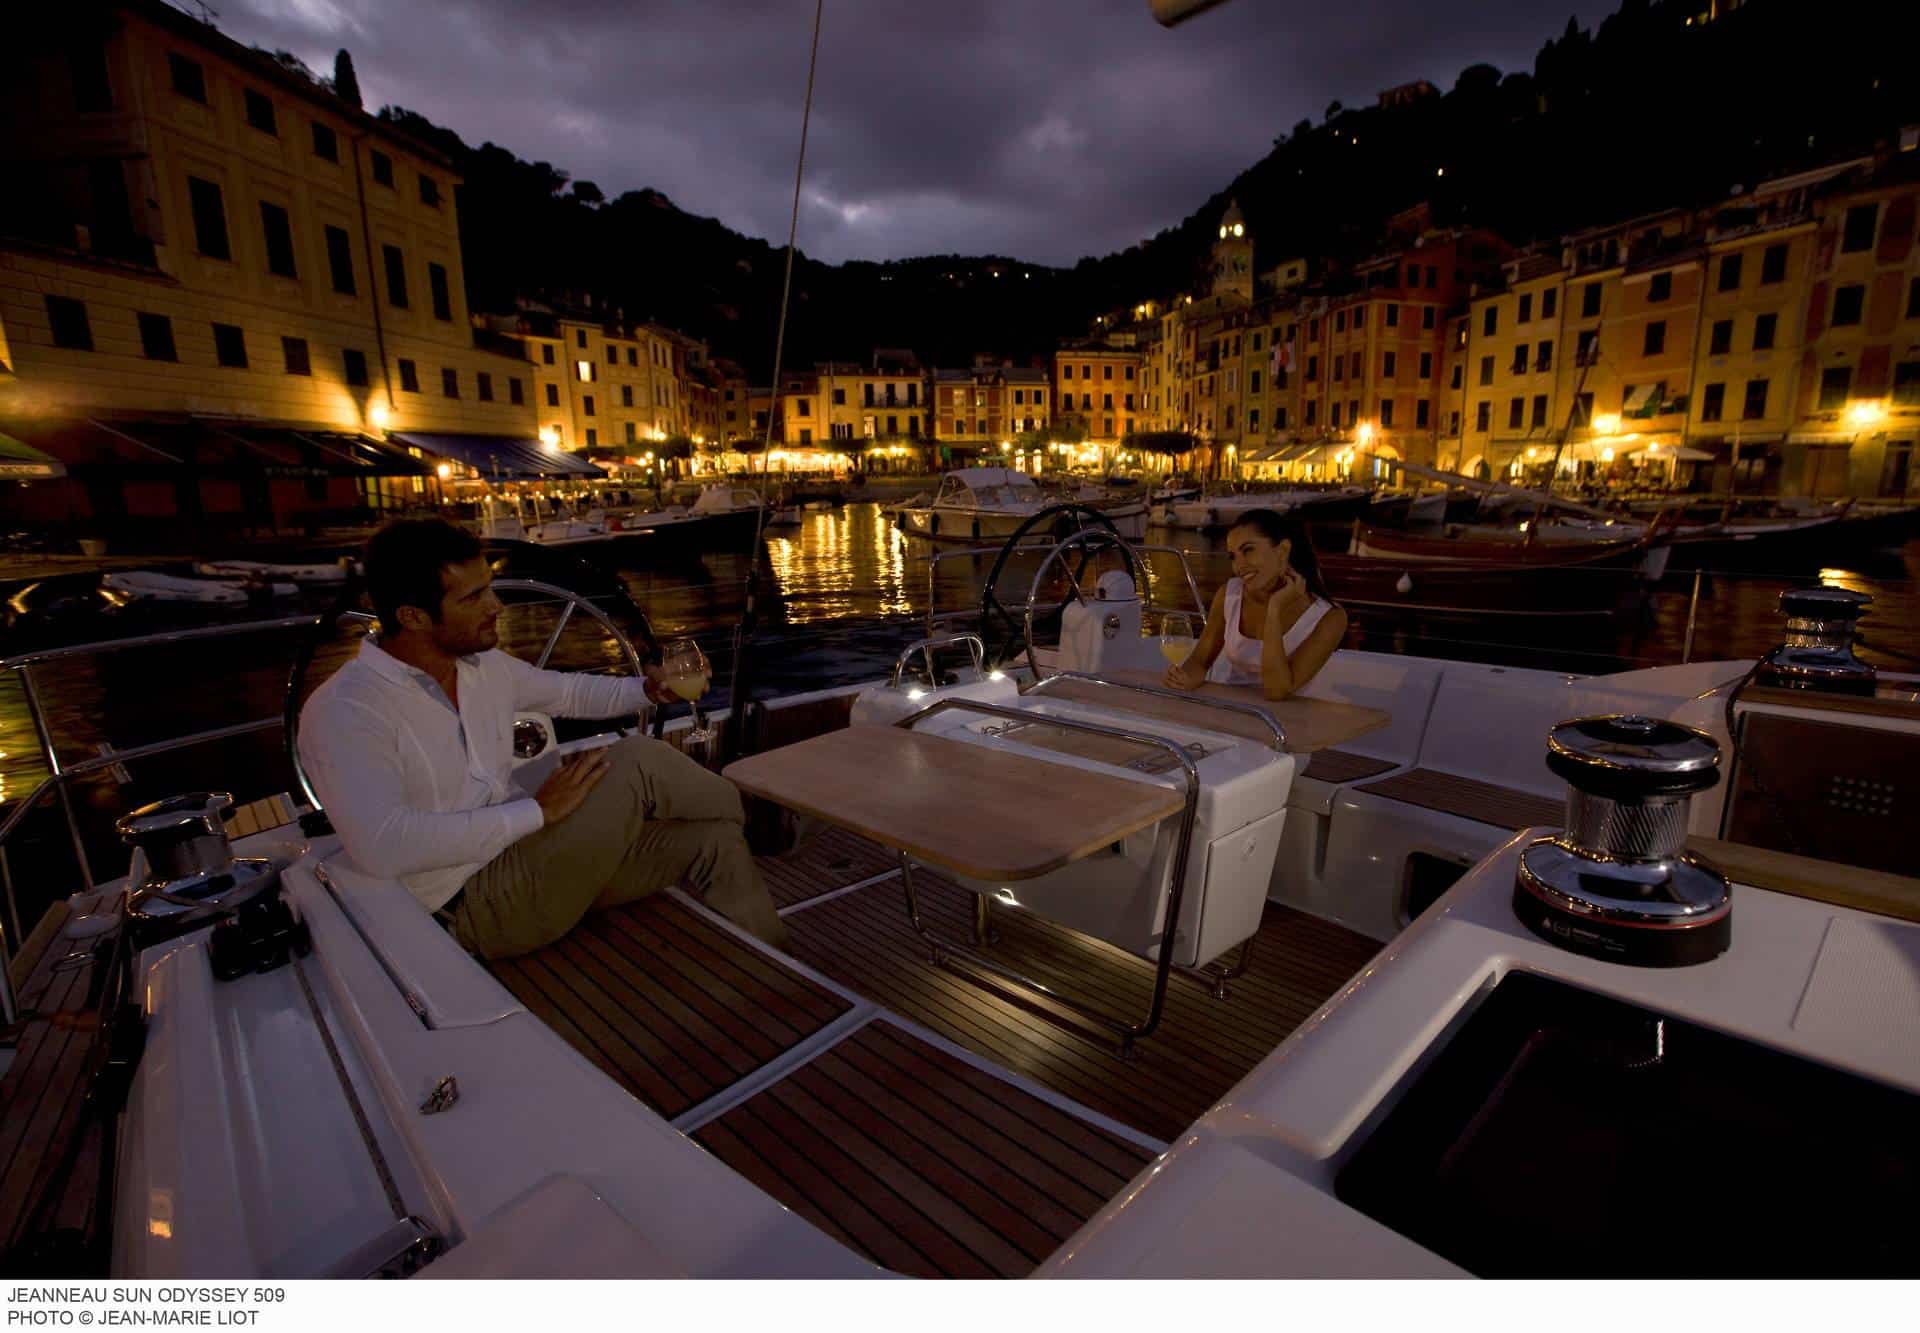 Ein Paar genießt einen romantischen Abend auf einem Katamaran mit einem beleuchteten Küstendorf im Hintergrund. Die Szene wird durch sanftes, stimmungsvolles Licht erhellt, das die ruhige Lage des Yachthafens hervorhebt.